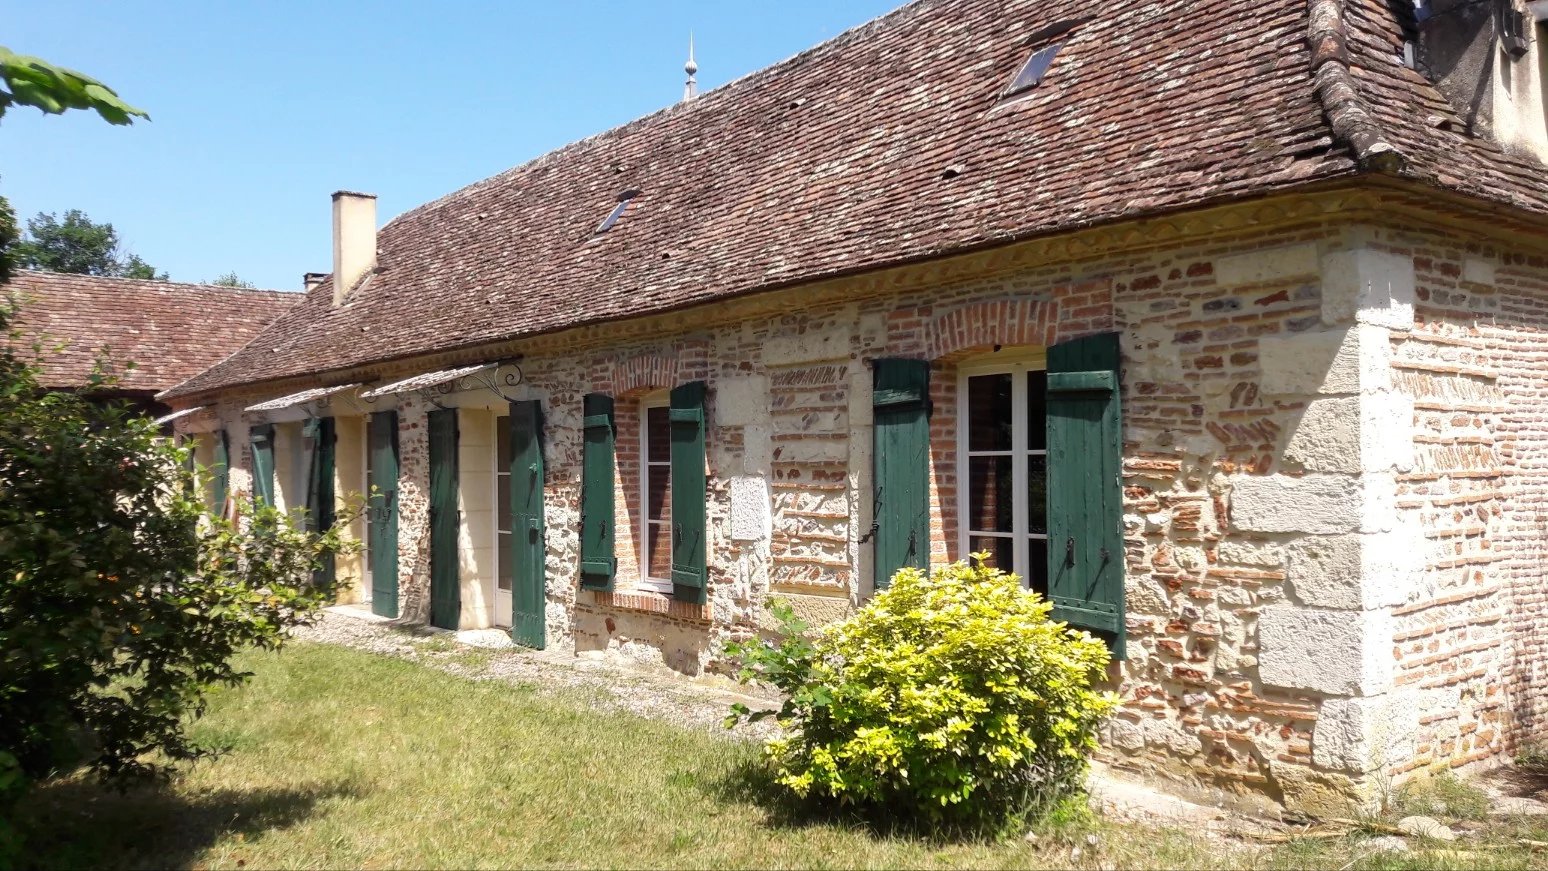 Ensemble immobilier sur 4Ha - Bord de Dordogne